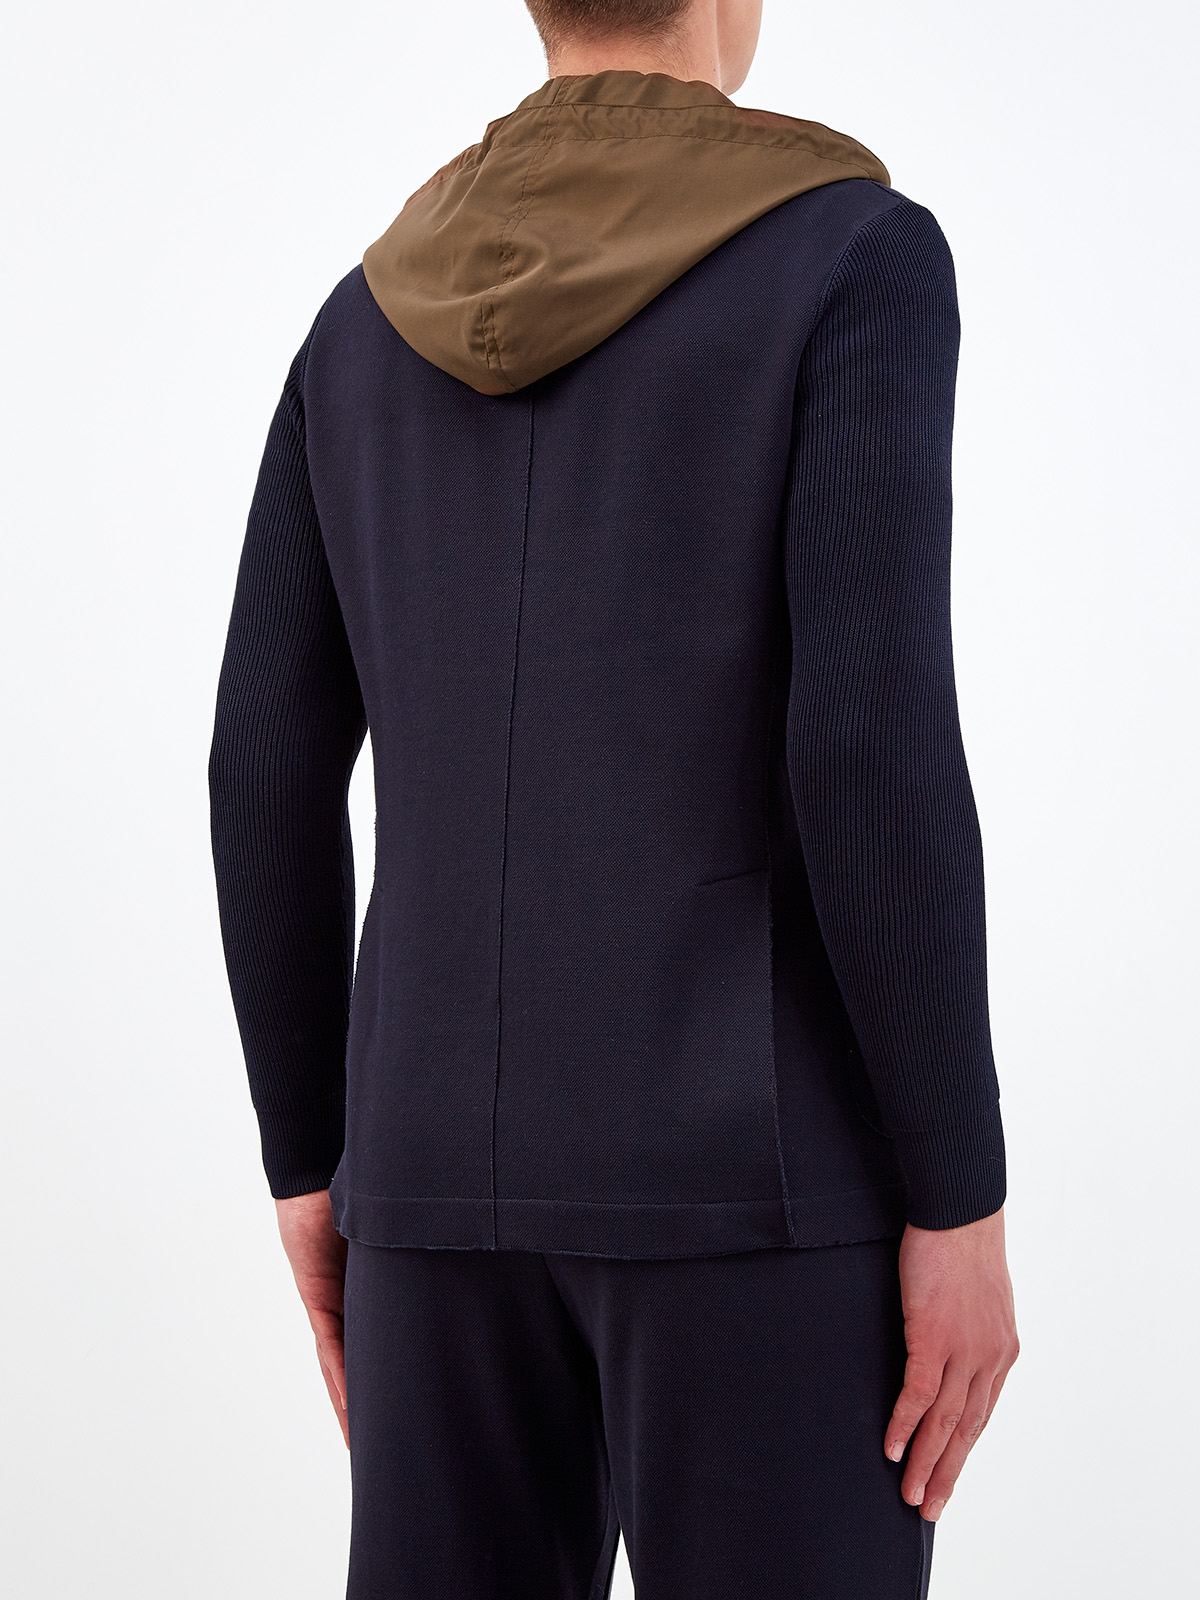 Комбинированный пиджак из хлопка и матового нейлона ELEVENTY, цвет мульти, размер 52;48 - фото 4